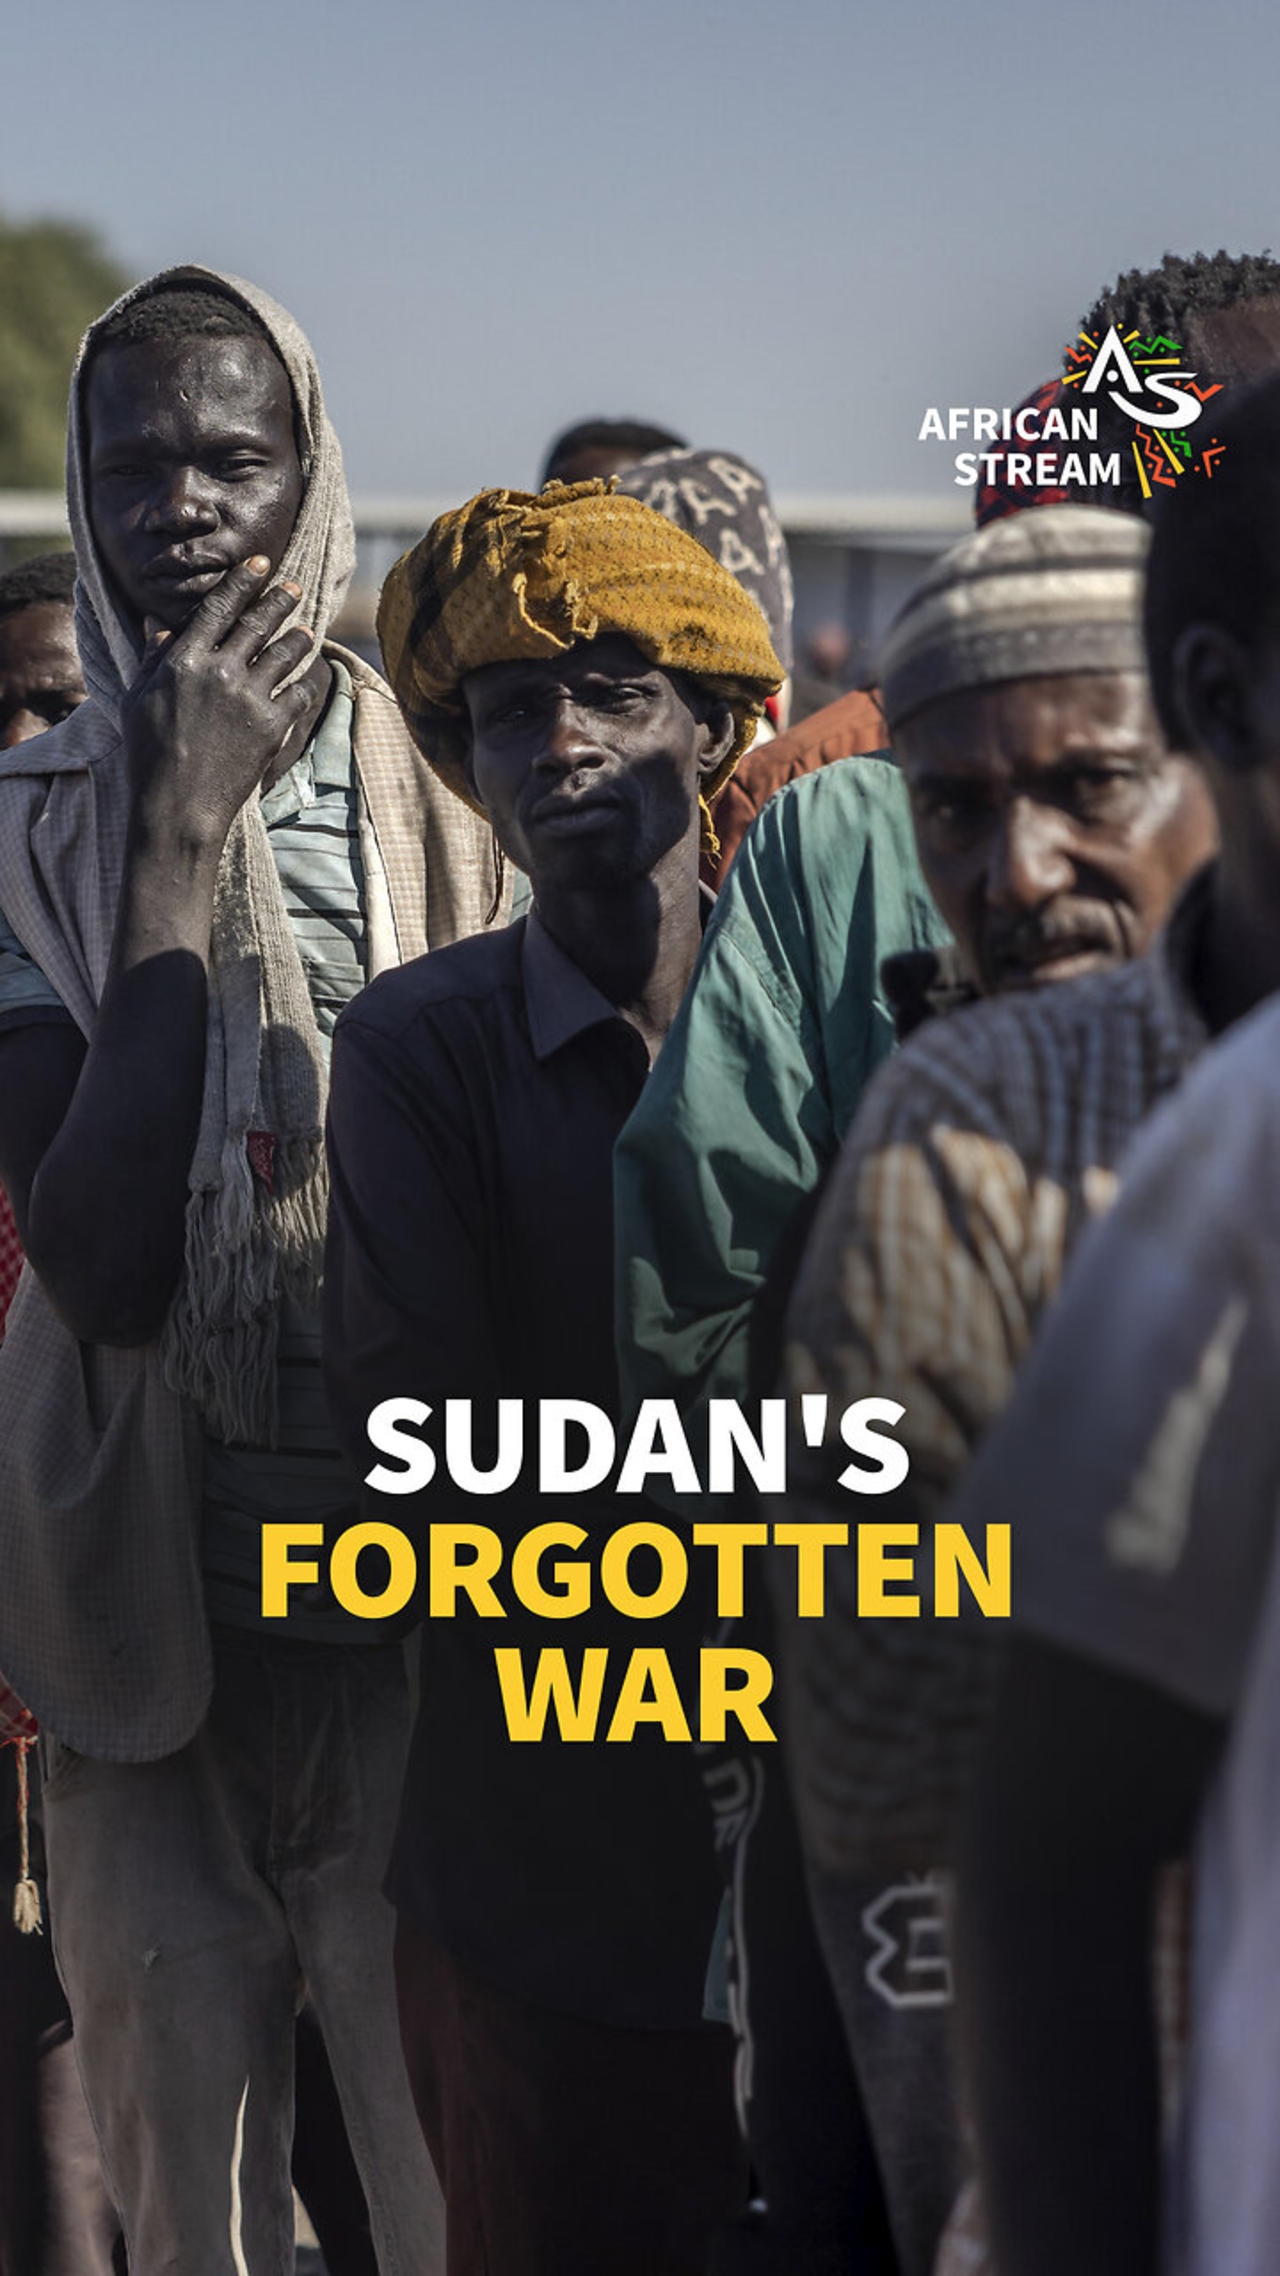 SUDAN'S FORGOTTEN WAR